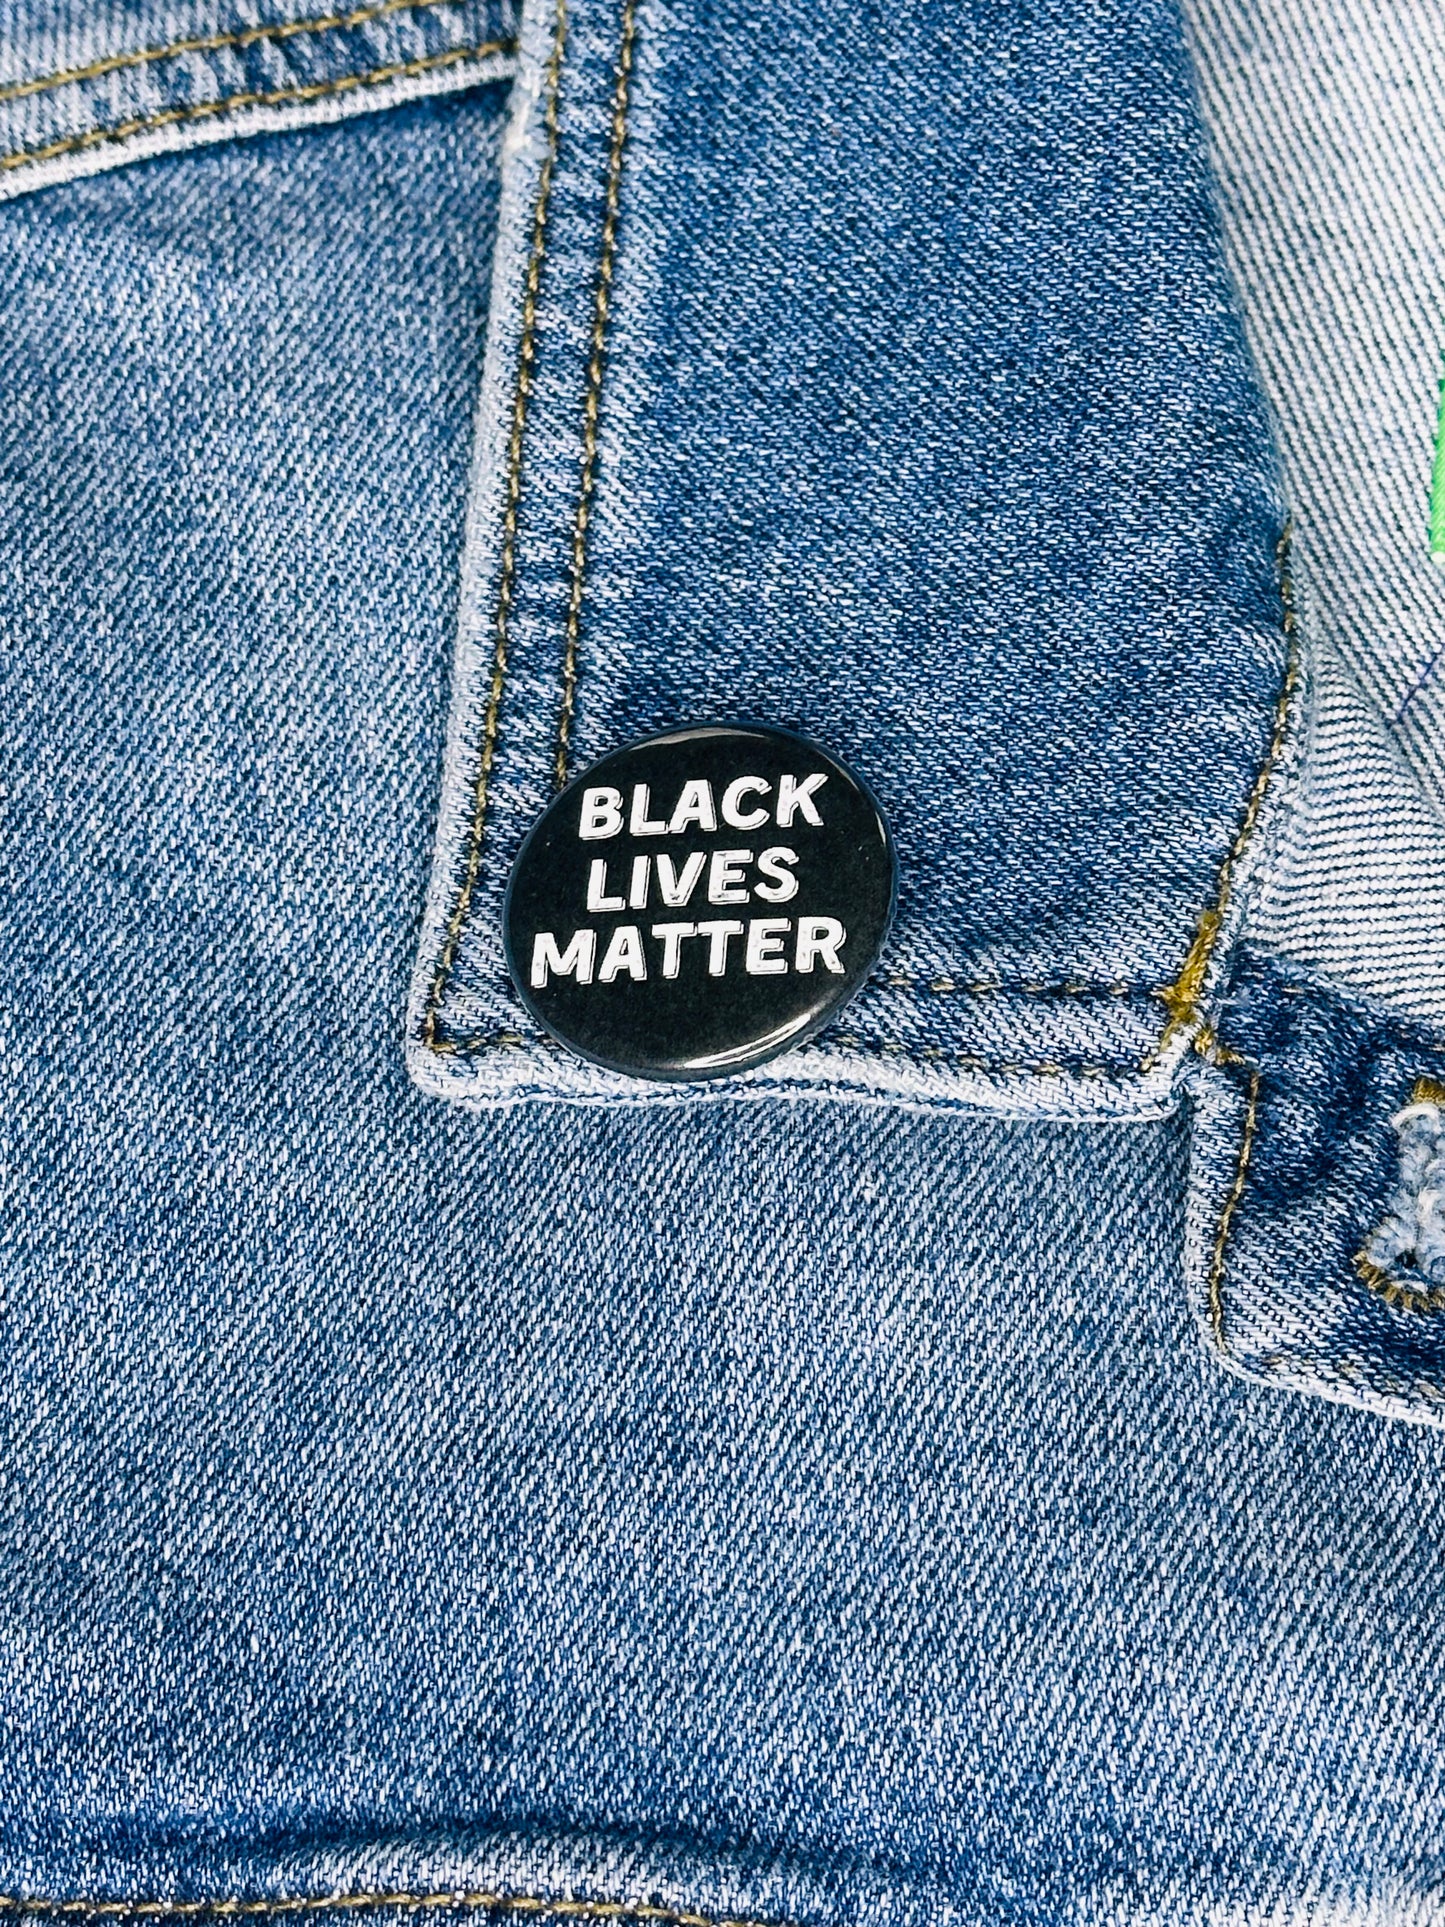 Pères noirs Black History Matters Pinback Button